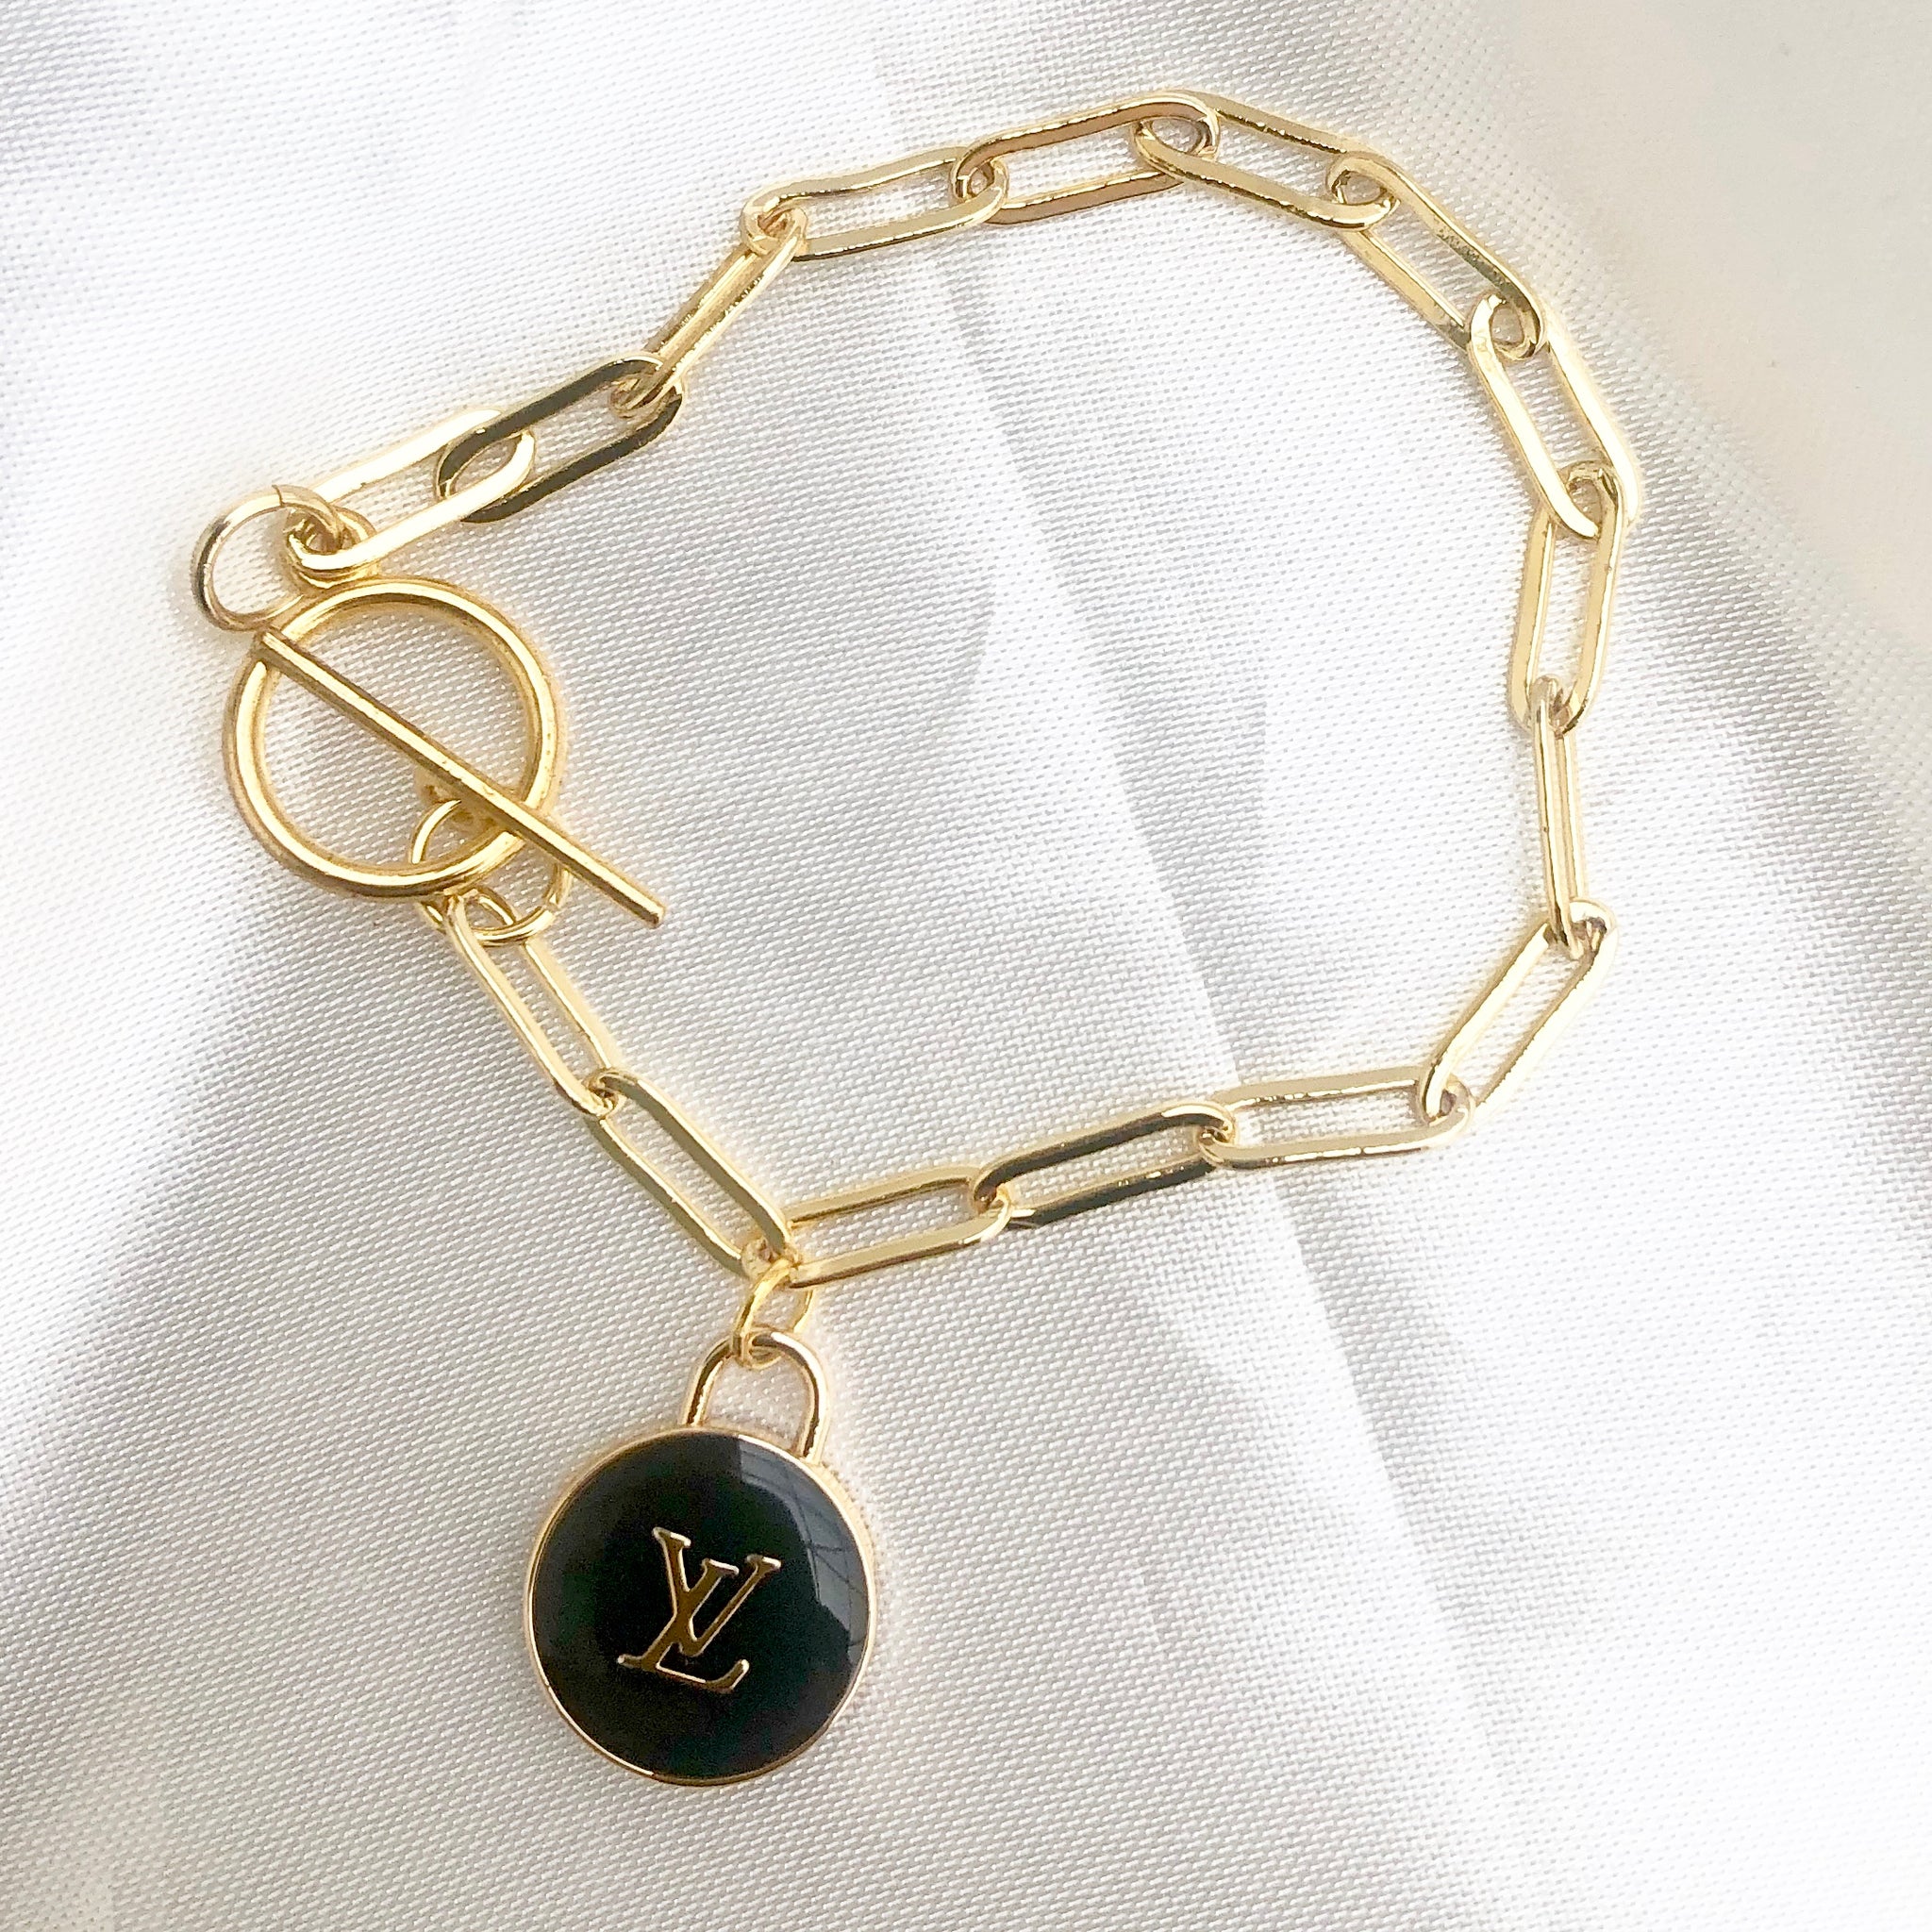 Louis Vuitton Charm Bracelet!